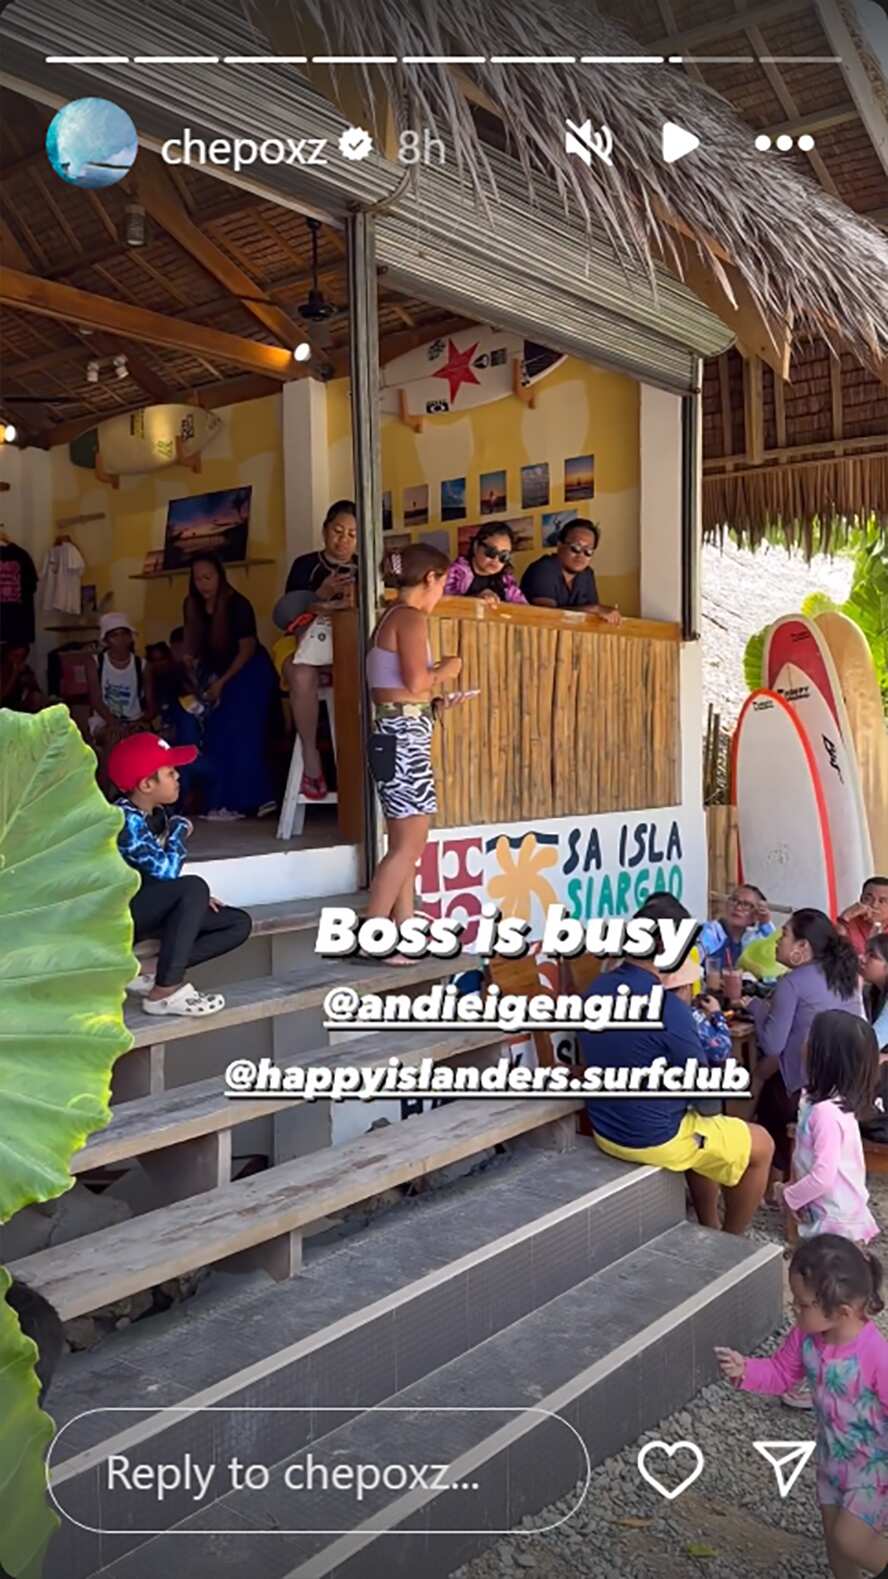 xPhilmar Alipayo, ibinahagi vid ni Andi na abalang-abala sa mga bisita sa surf club: “Boss is busy”